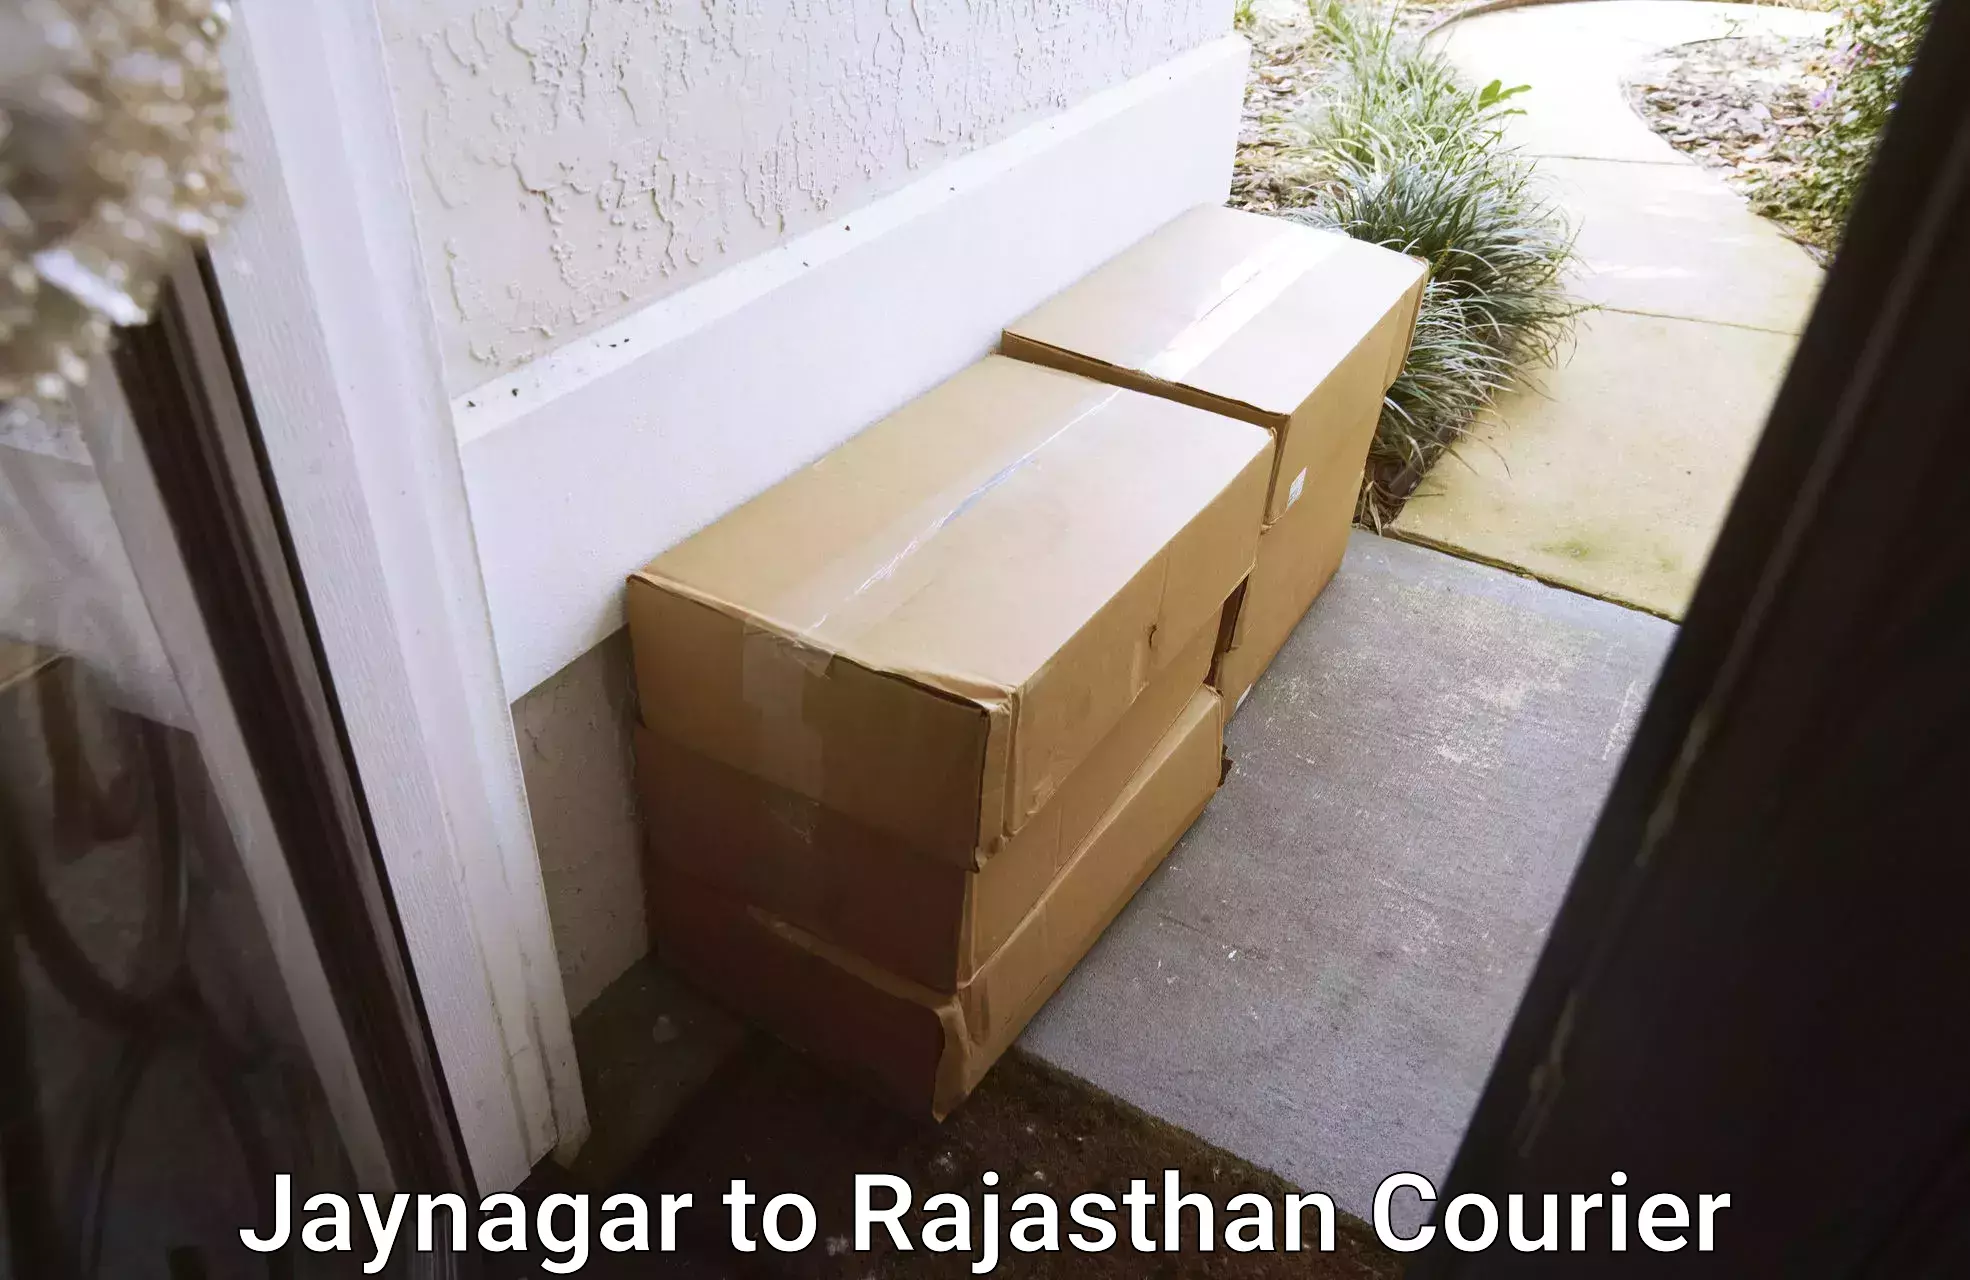 Residential moving experts Jaynagar to Sojat